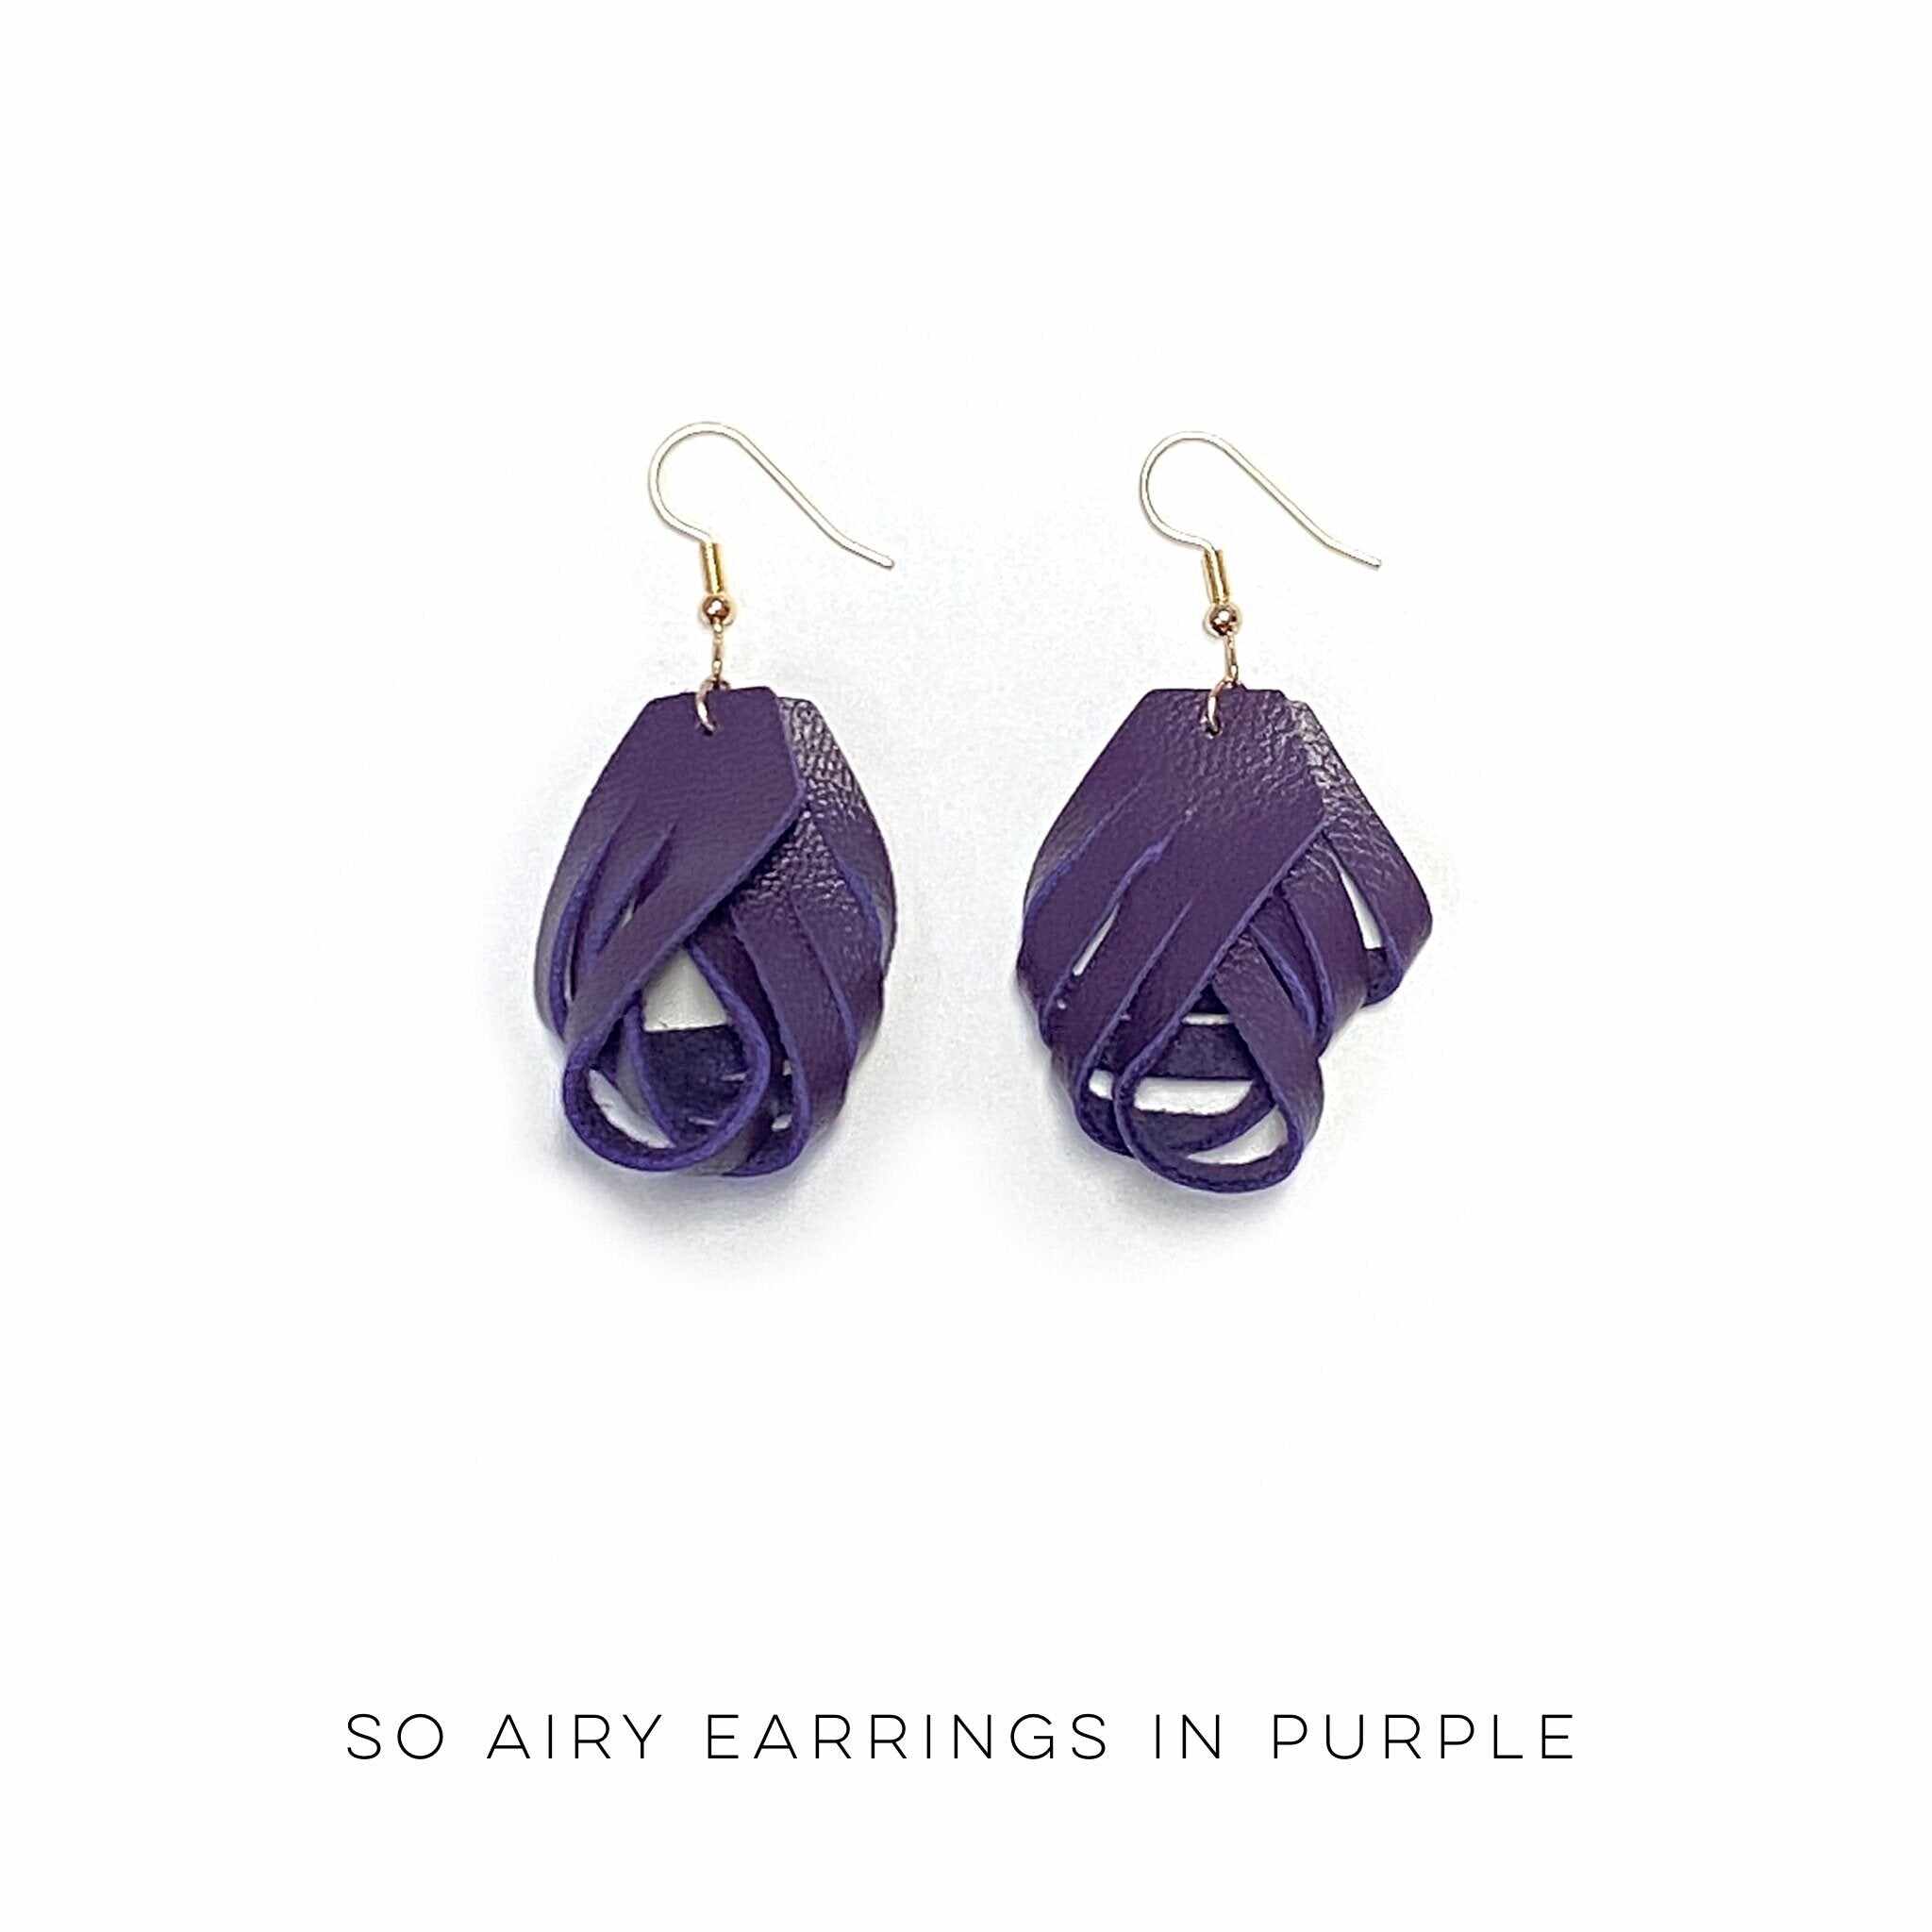 So Airy Earrings in Purple